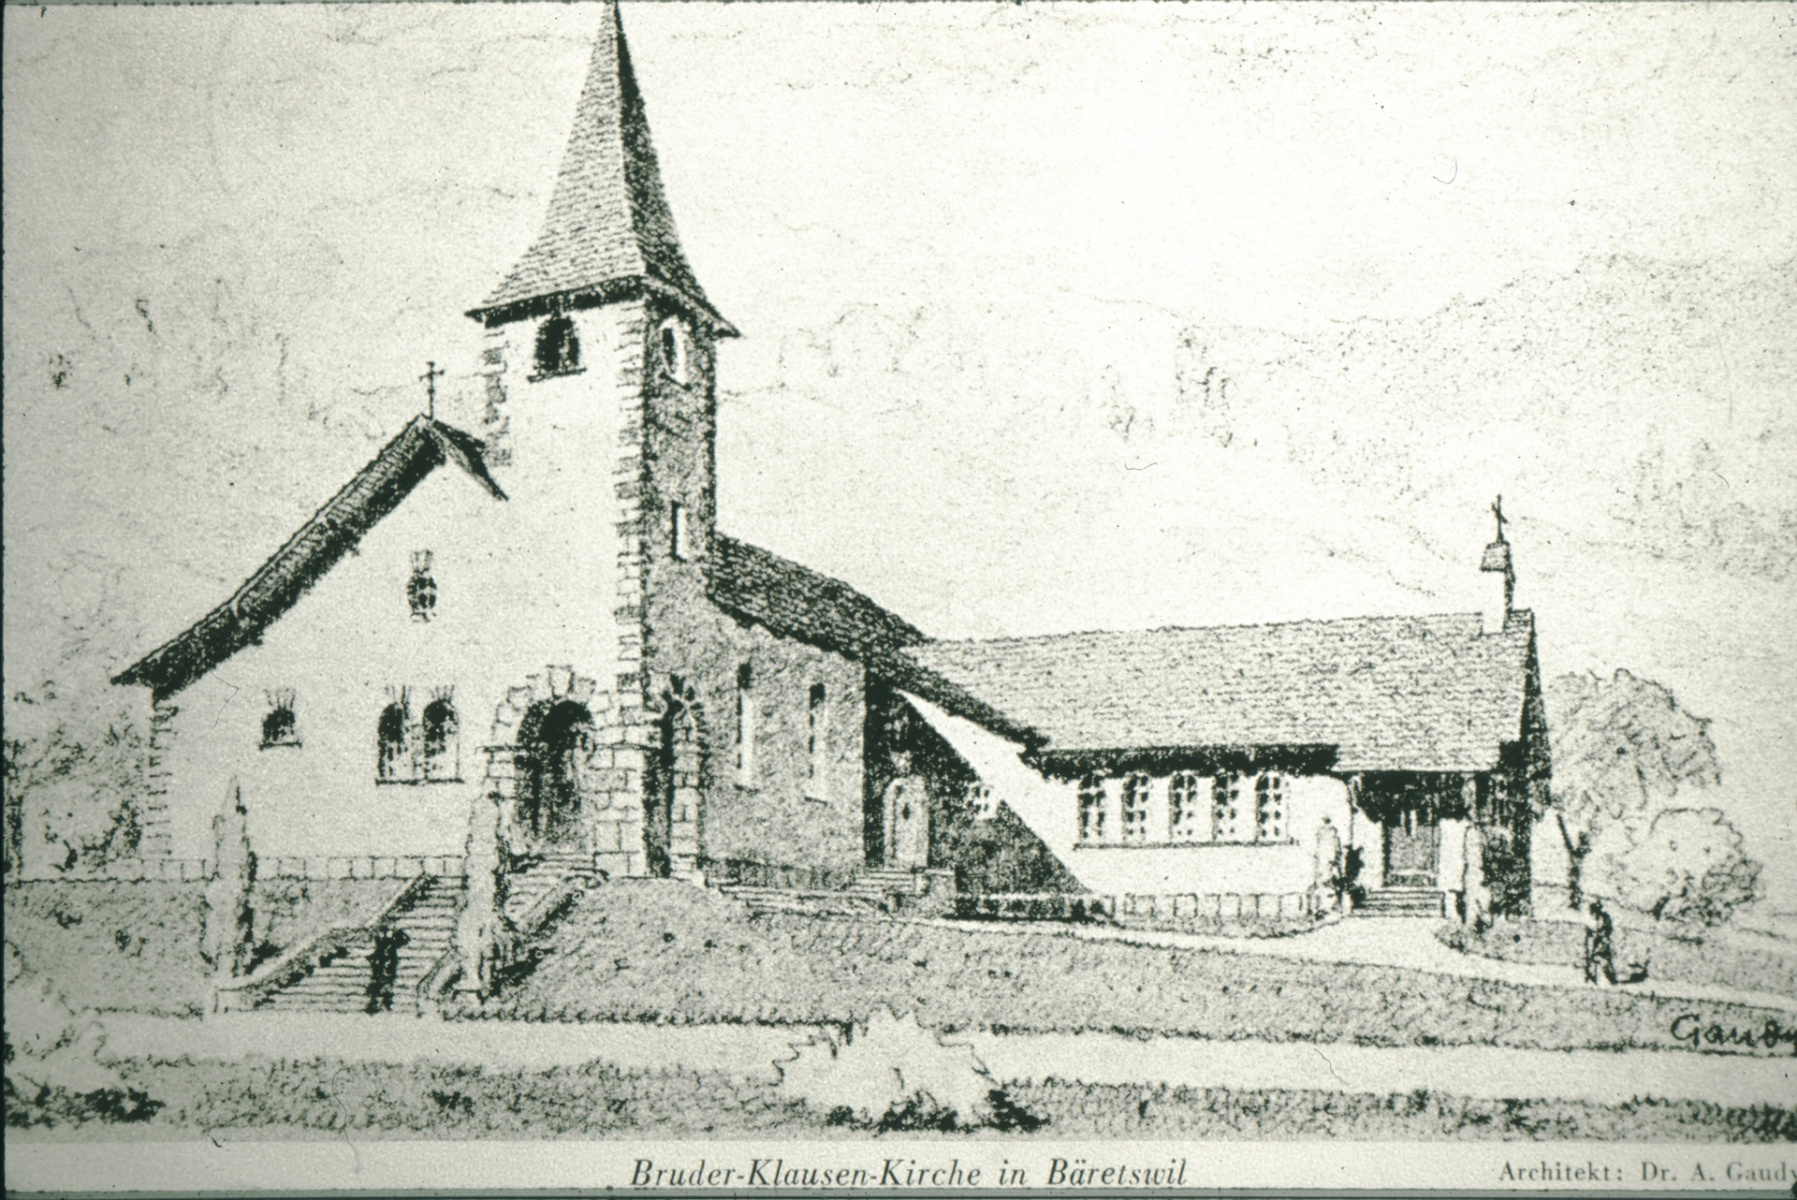 Bruder Klausen-Kirche, Pläne von A. Gaudy, nur Teil rechts realisiert